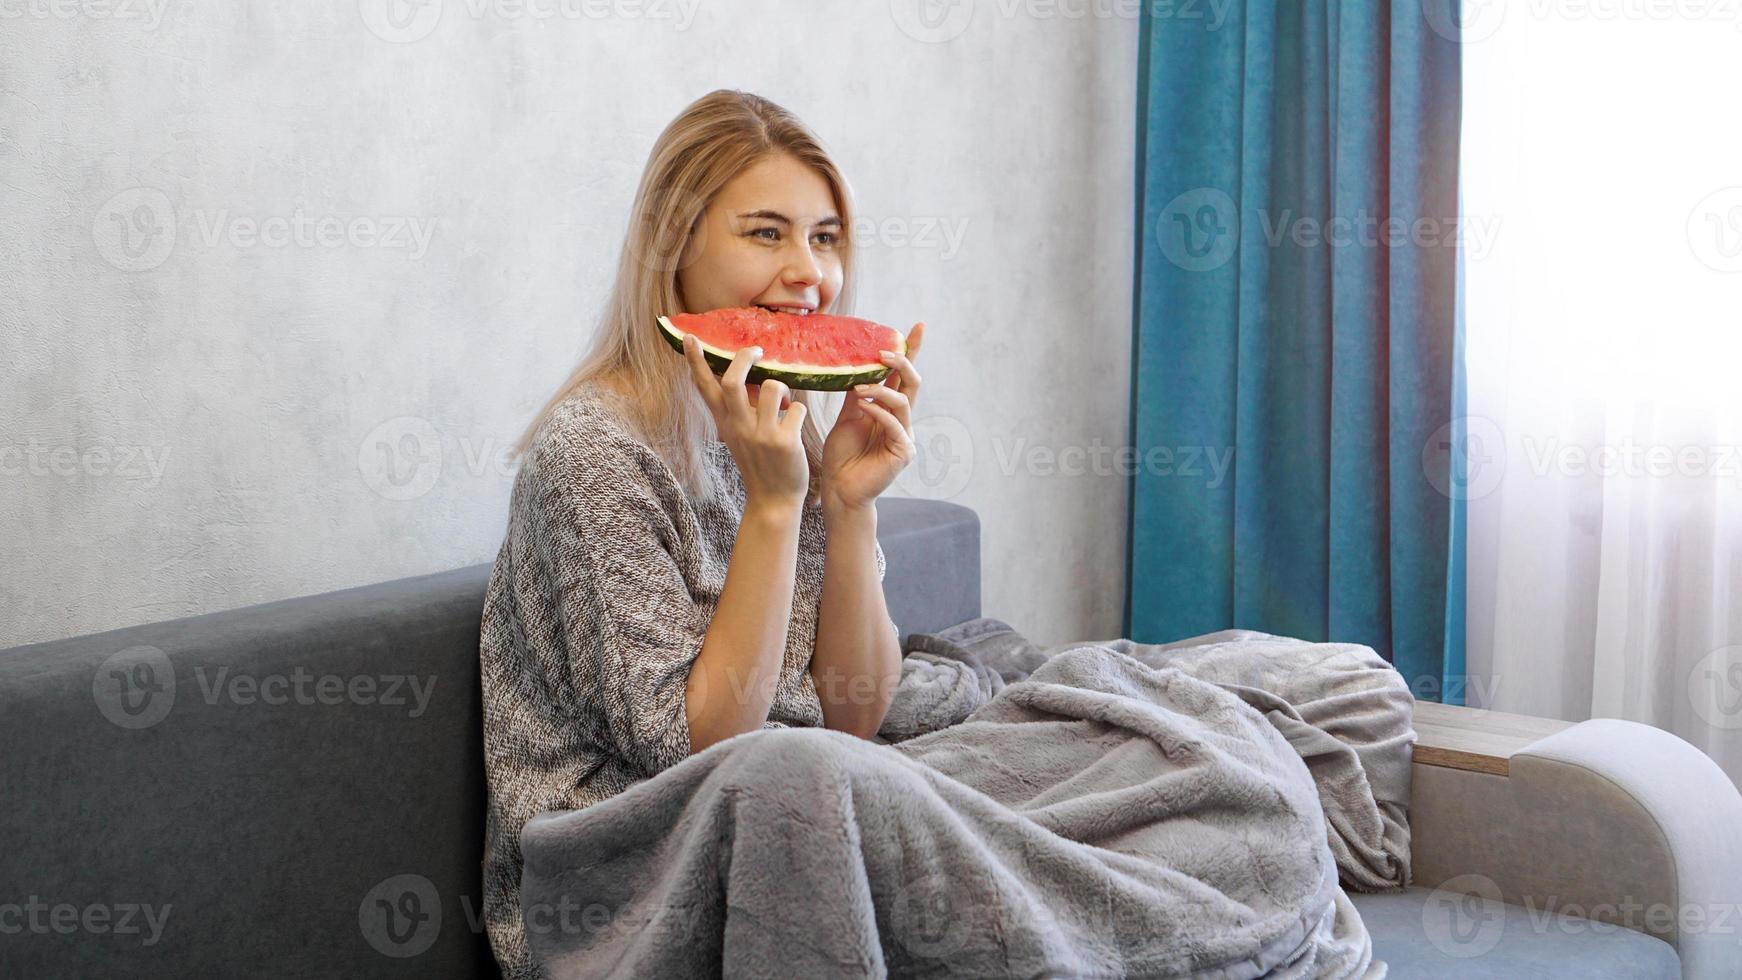 jeune femme séduisante mangeant de la pastèque. femme à la maison photo